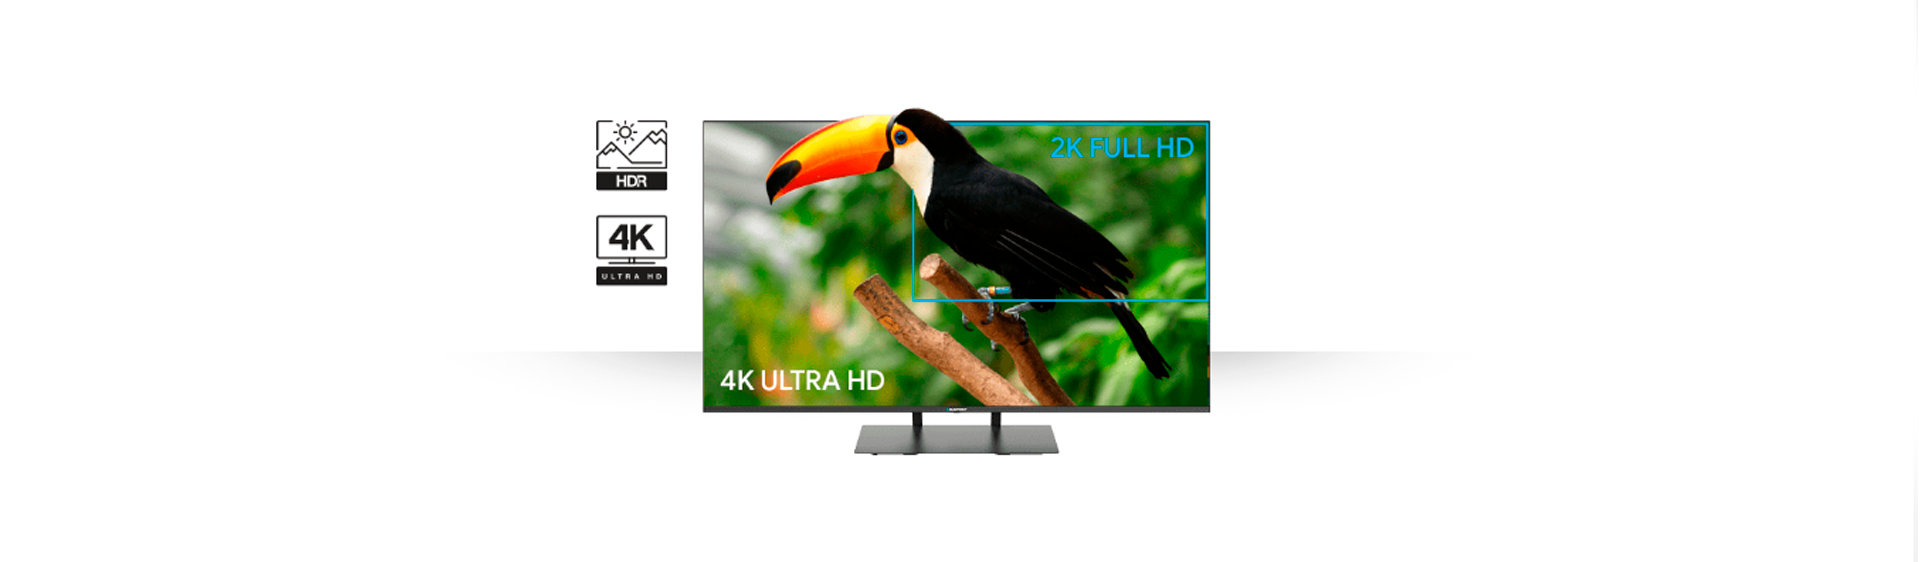 Телевизор UHD 4K Smart TV LED Blaupunkt 50UB7000